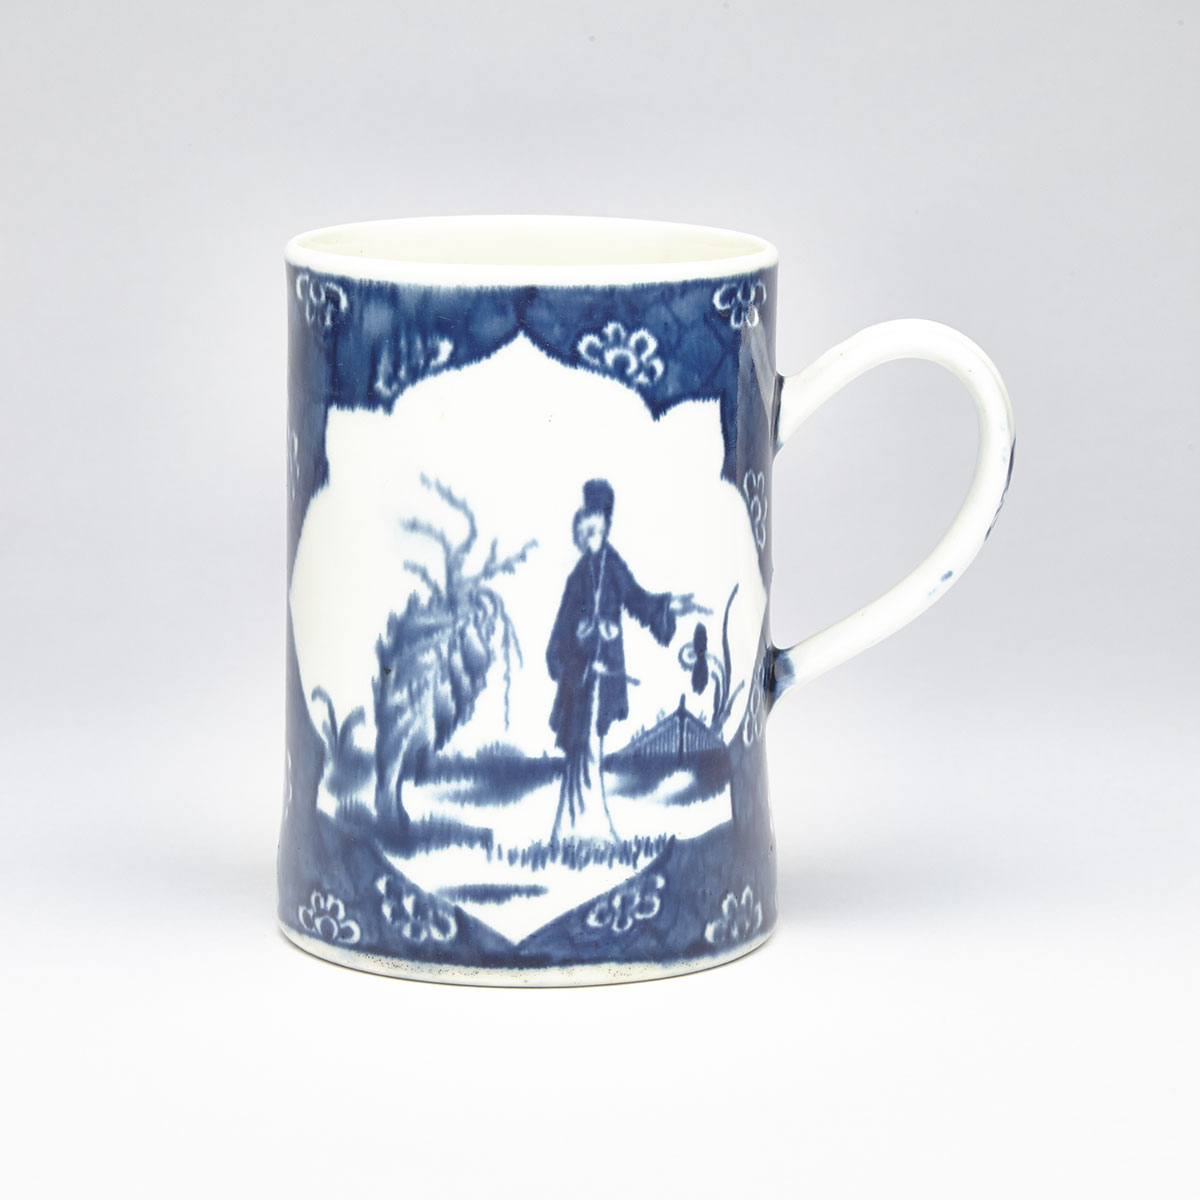 Worcester ‘Cracked Ice Ground’ Mug, c.1765-70